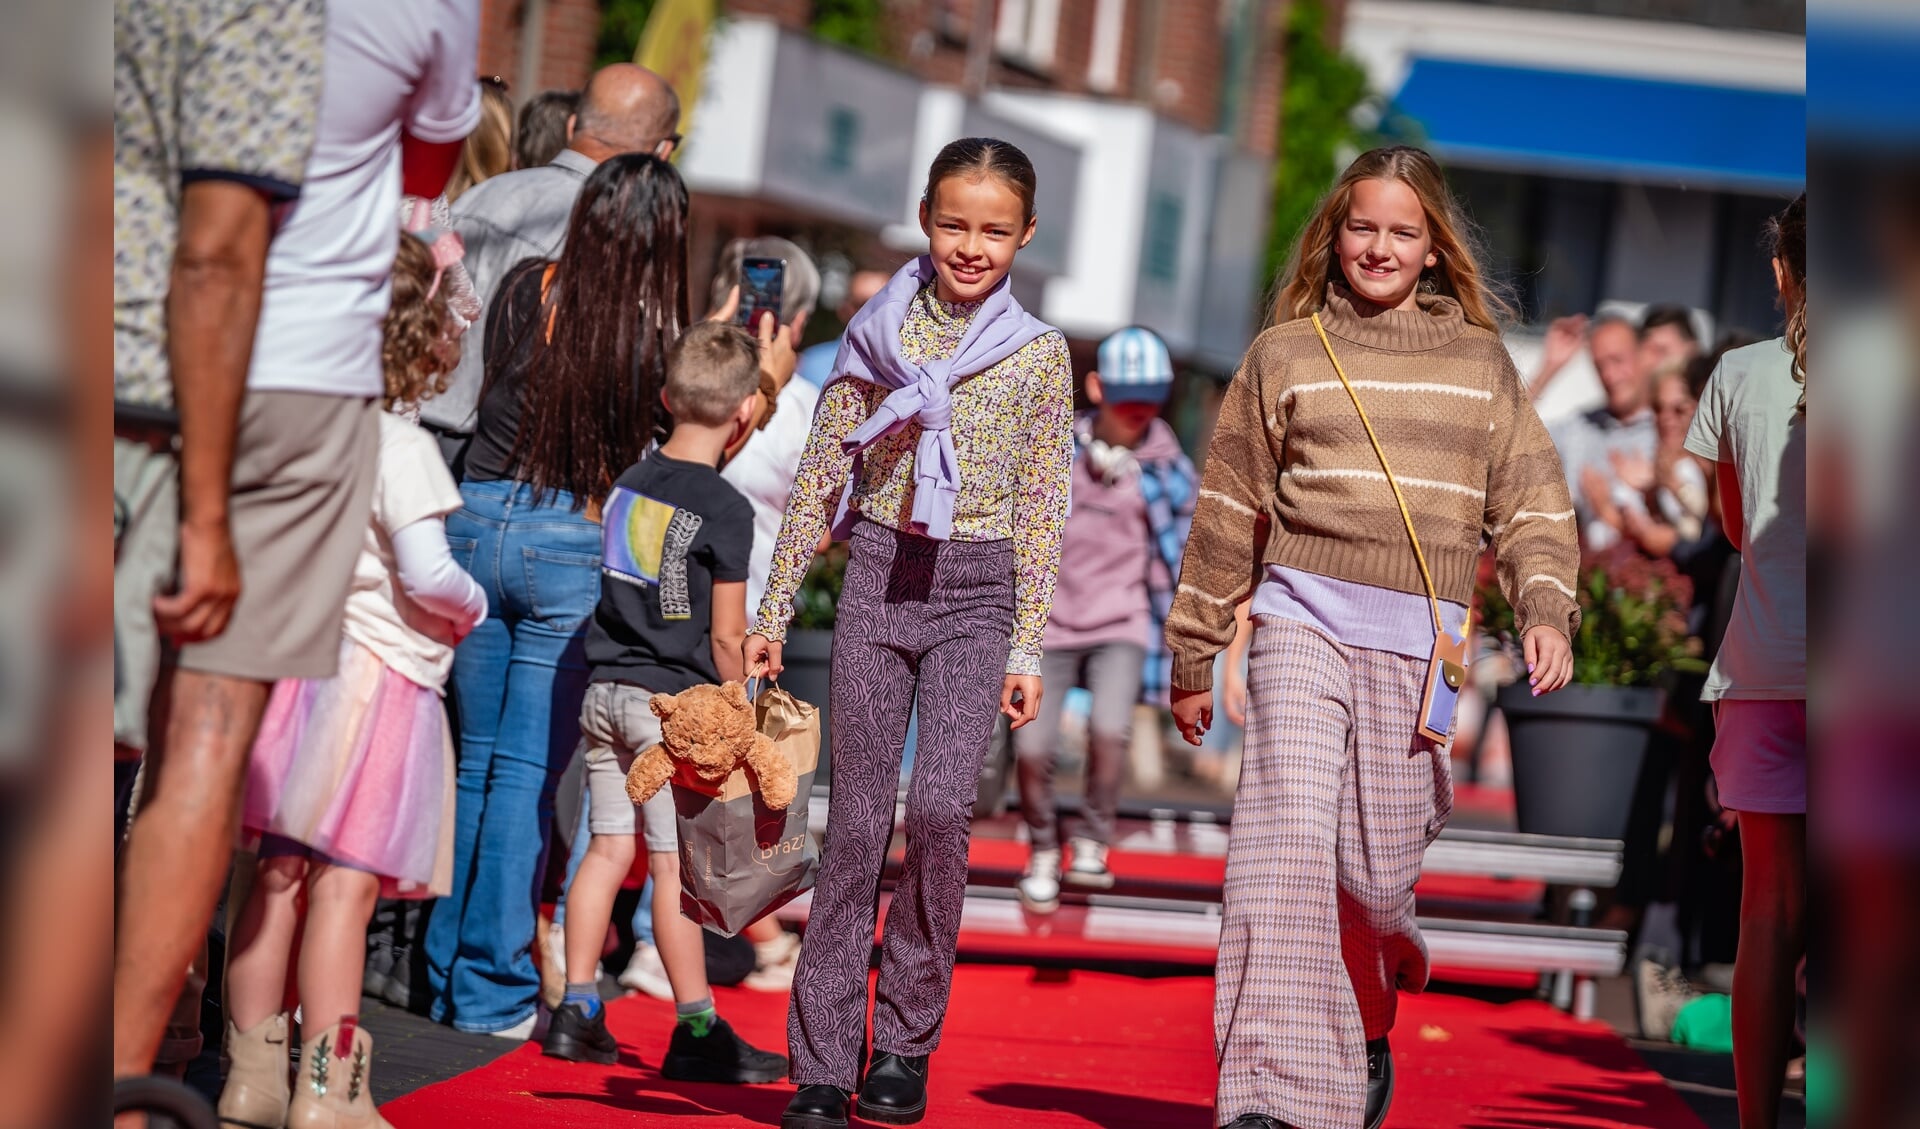 Zondag 7 april is er weer koopzondag met modeshow in het centrum van Lichtenvoorde. Foto: Jorieke Philippi